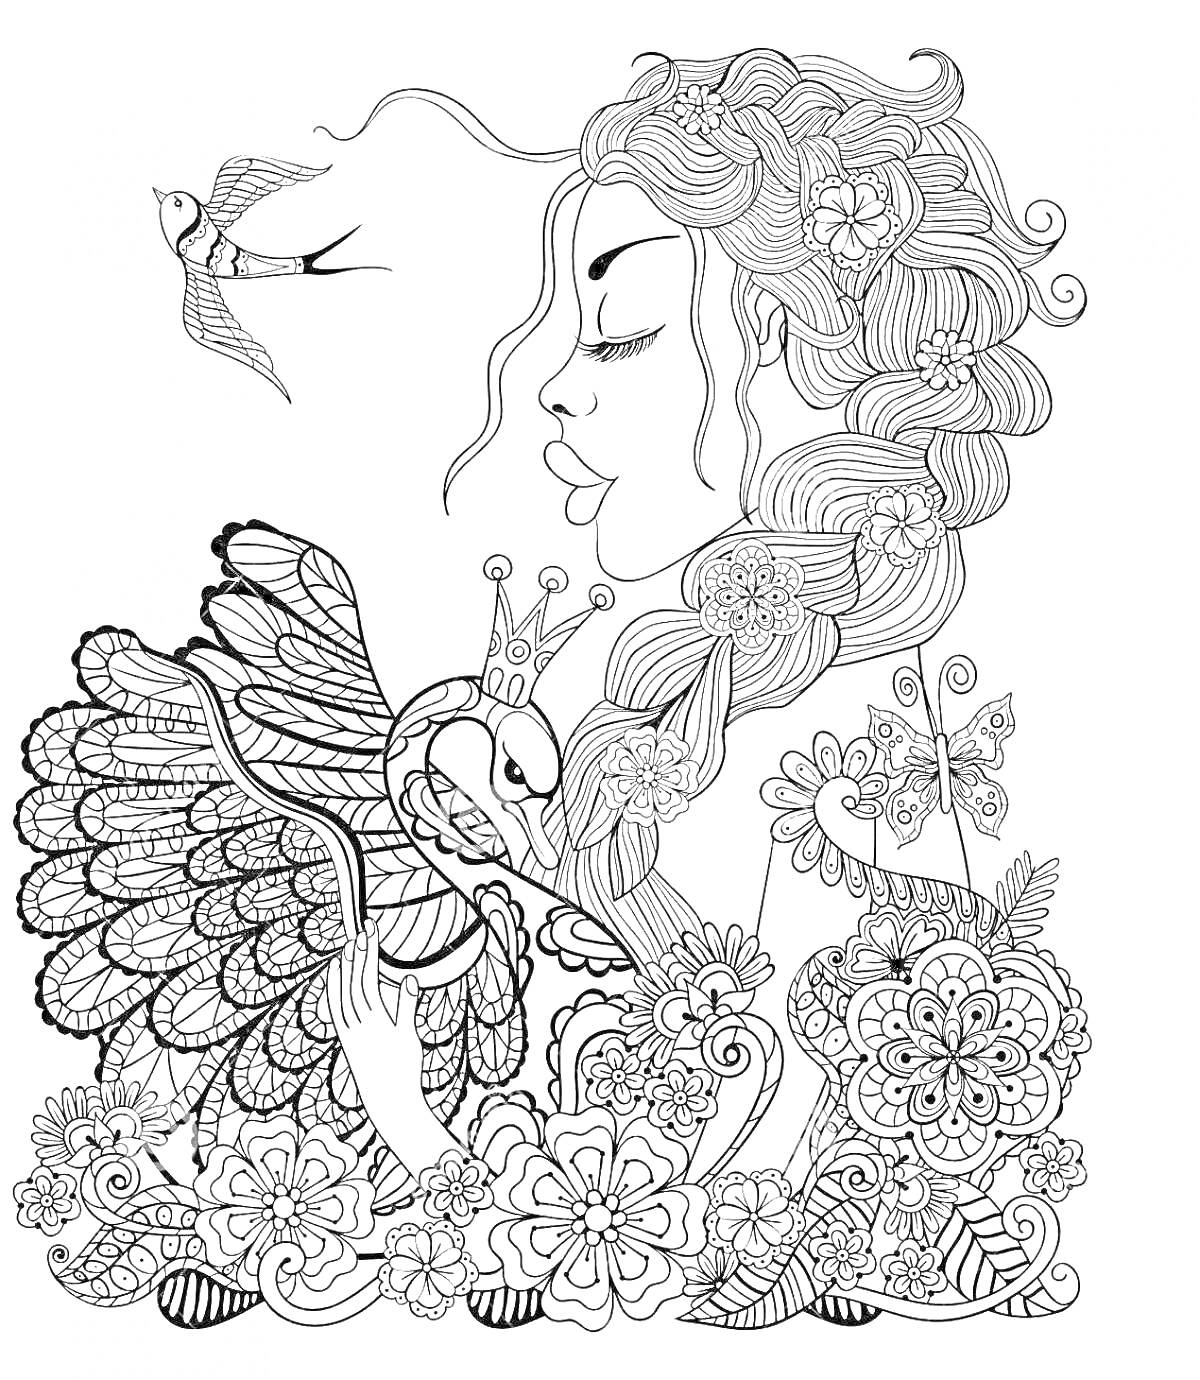 Девушка с длинными волосами, держащая коронованного лебедя, рядом цветы и стрекоза, в летающей птичке вверх